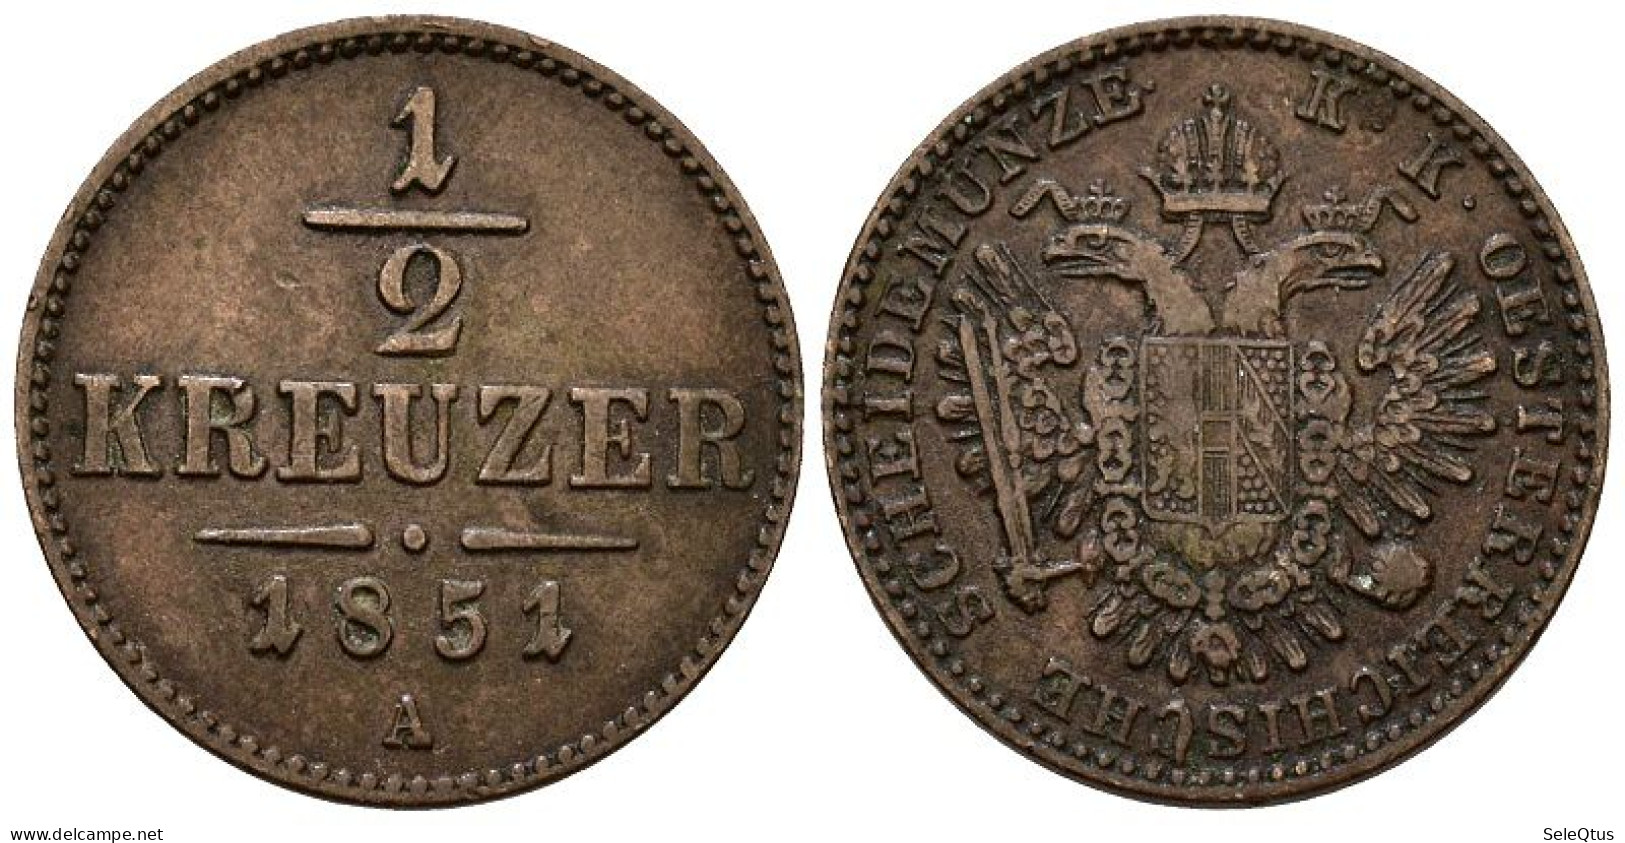 Monedas Antiguas - Ancient Coins (00123-007-1090) - Austria